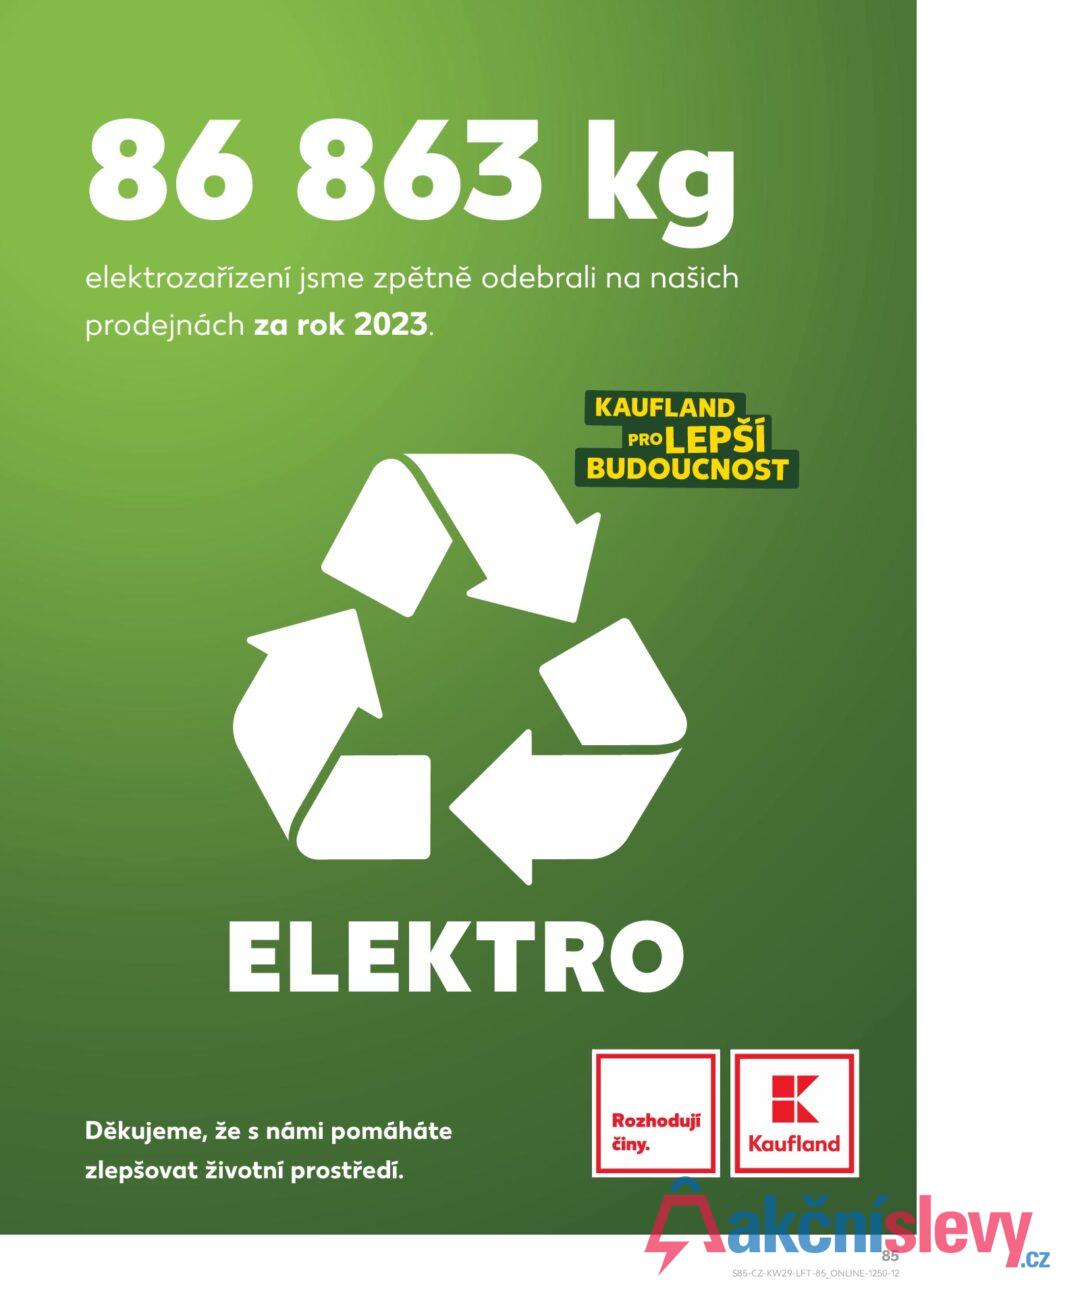 86 863 kg elektrozařízení jsme zpětně odebrali na našich prodejnách za rok 2023. KAUFLAND PRO LEPŠÍ BUDOUCNOST ELEKTRO Rozhodují Děkujeme, že s námi pomáháte činy. Kaufland zlepšovat životní prostředí. 85 S85-CZ-KW29-LFT-85_ONLINE-1250-12